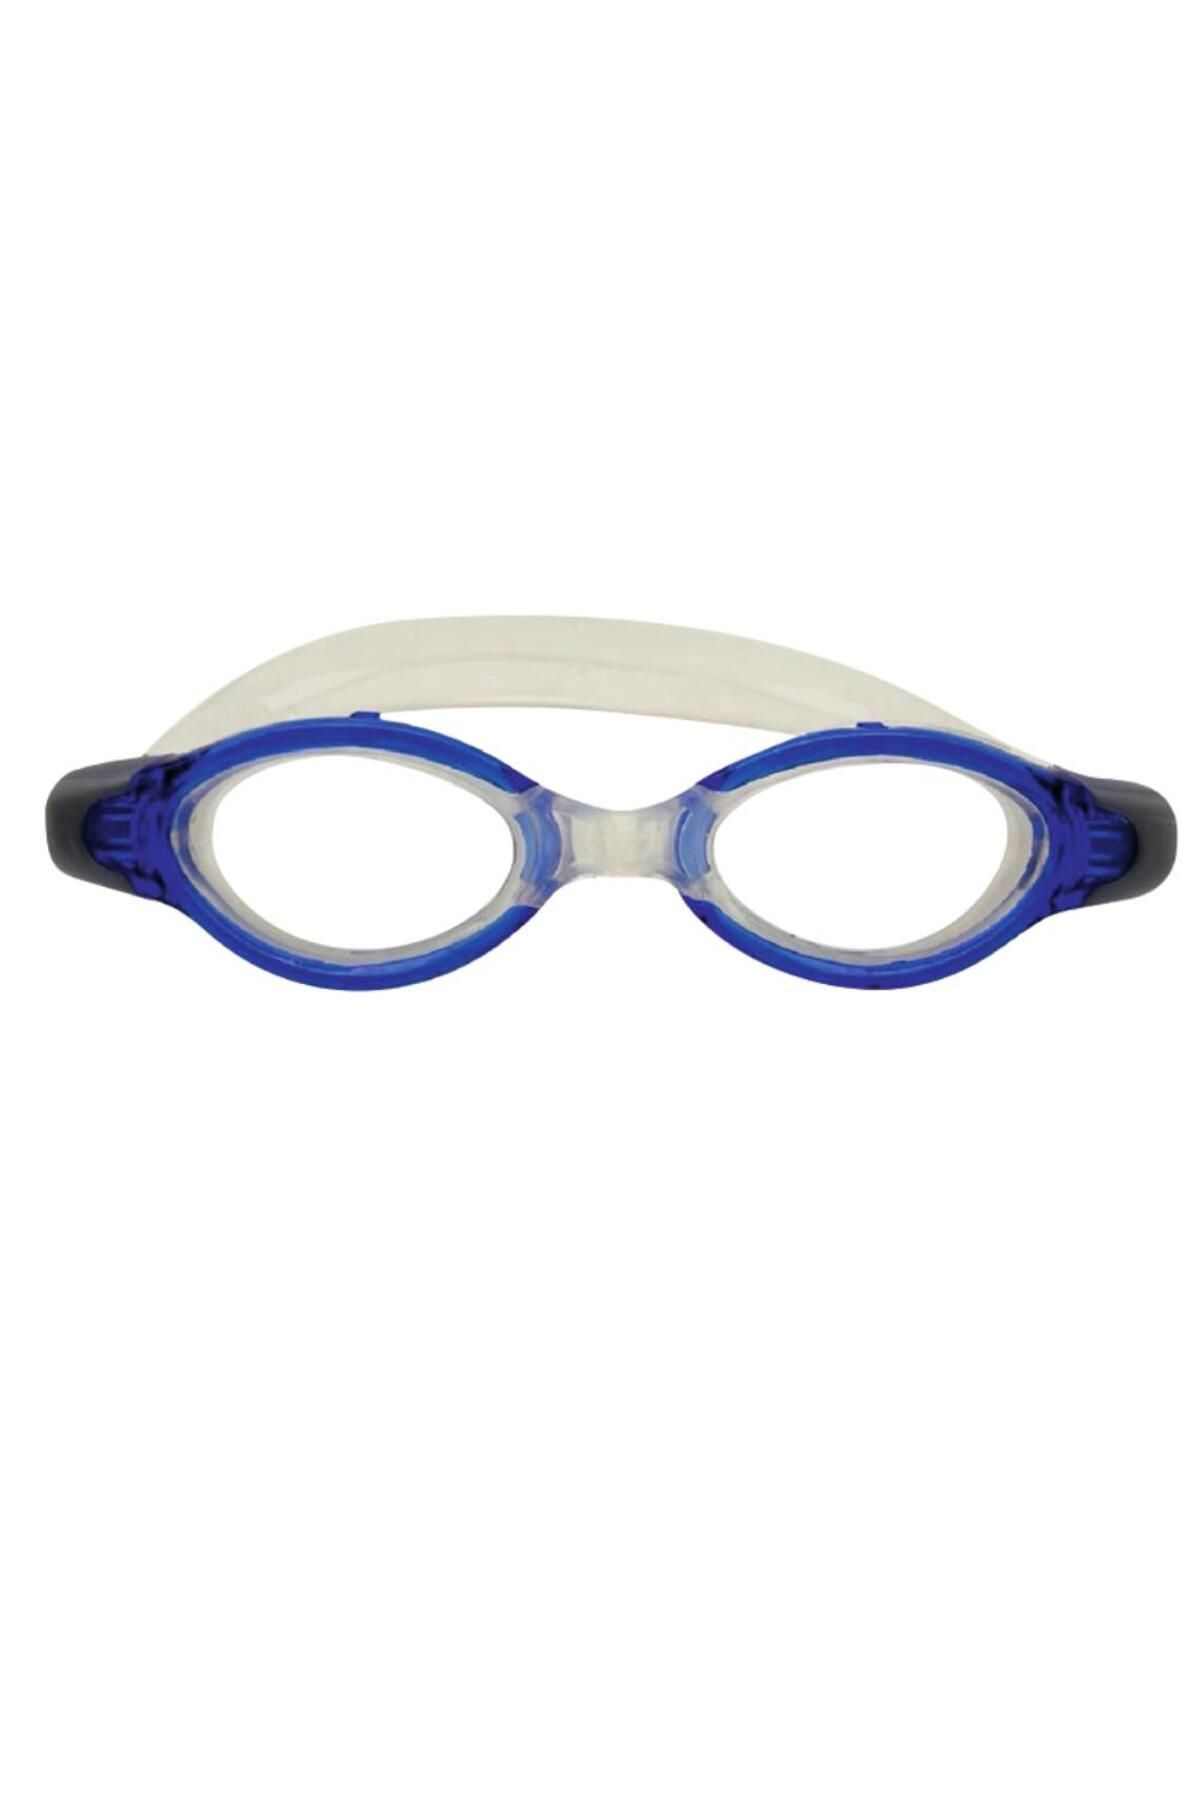 Genel Markalar Silikon Yüzücü Gözlüğü Antifog - Gs5a